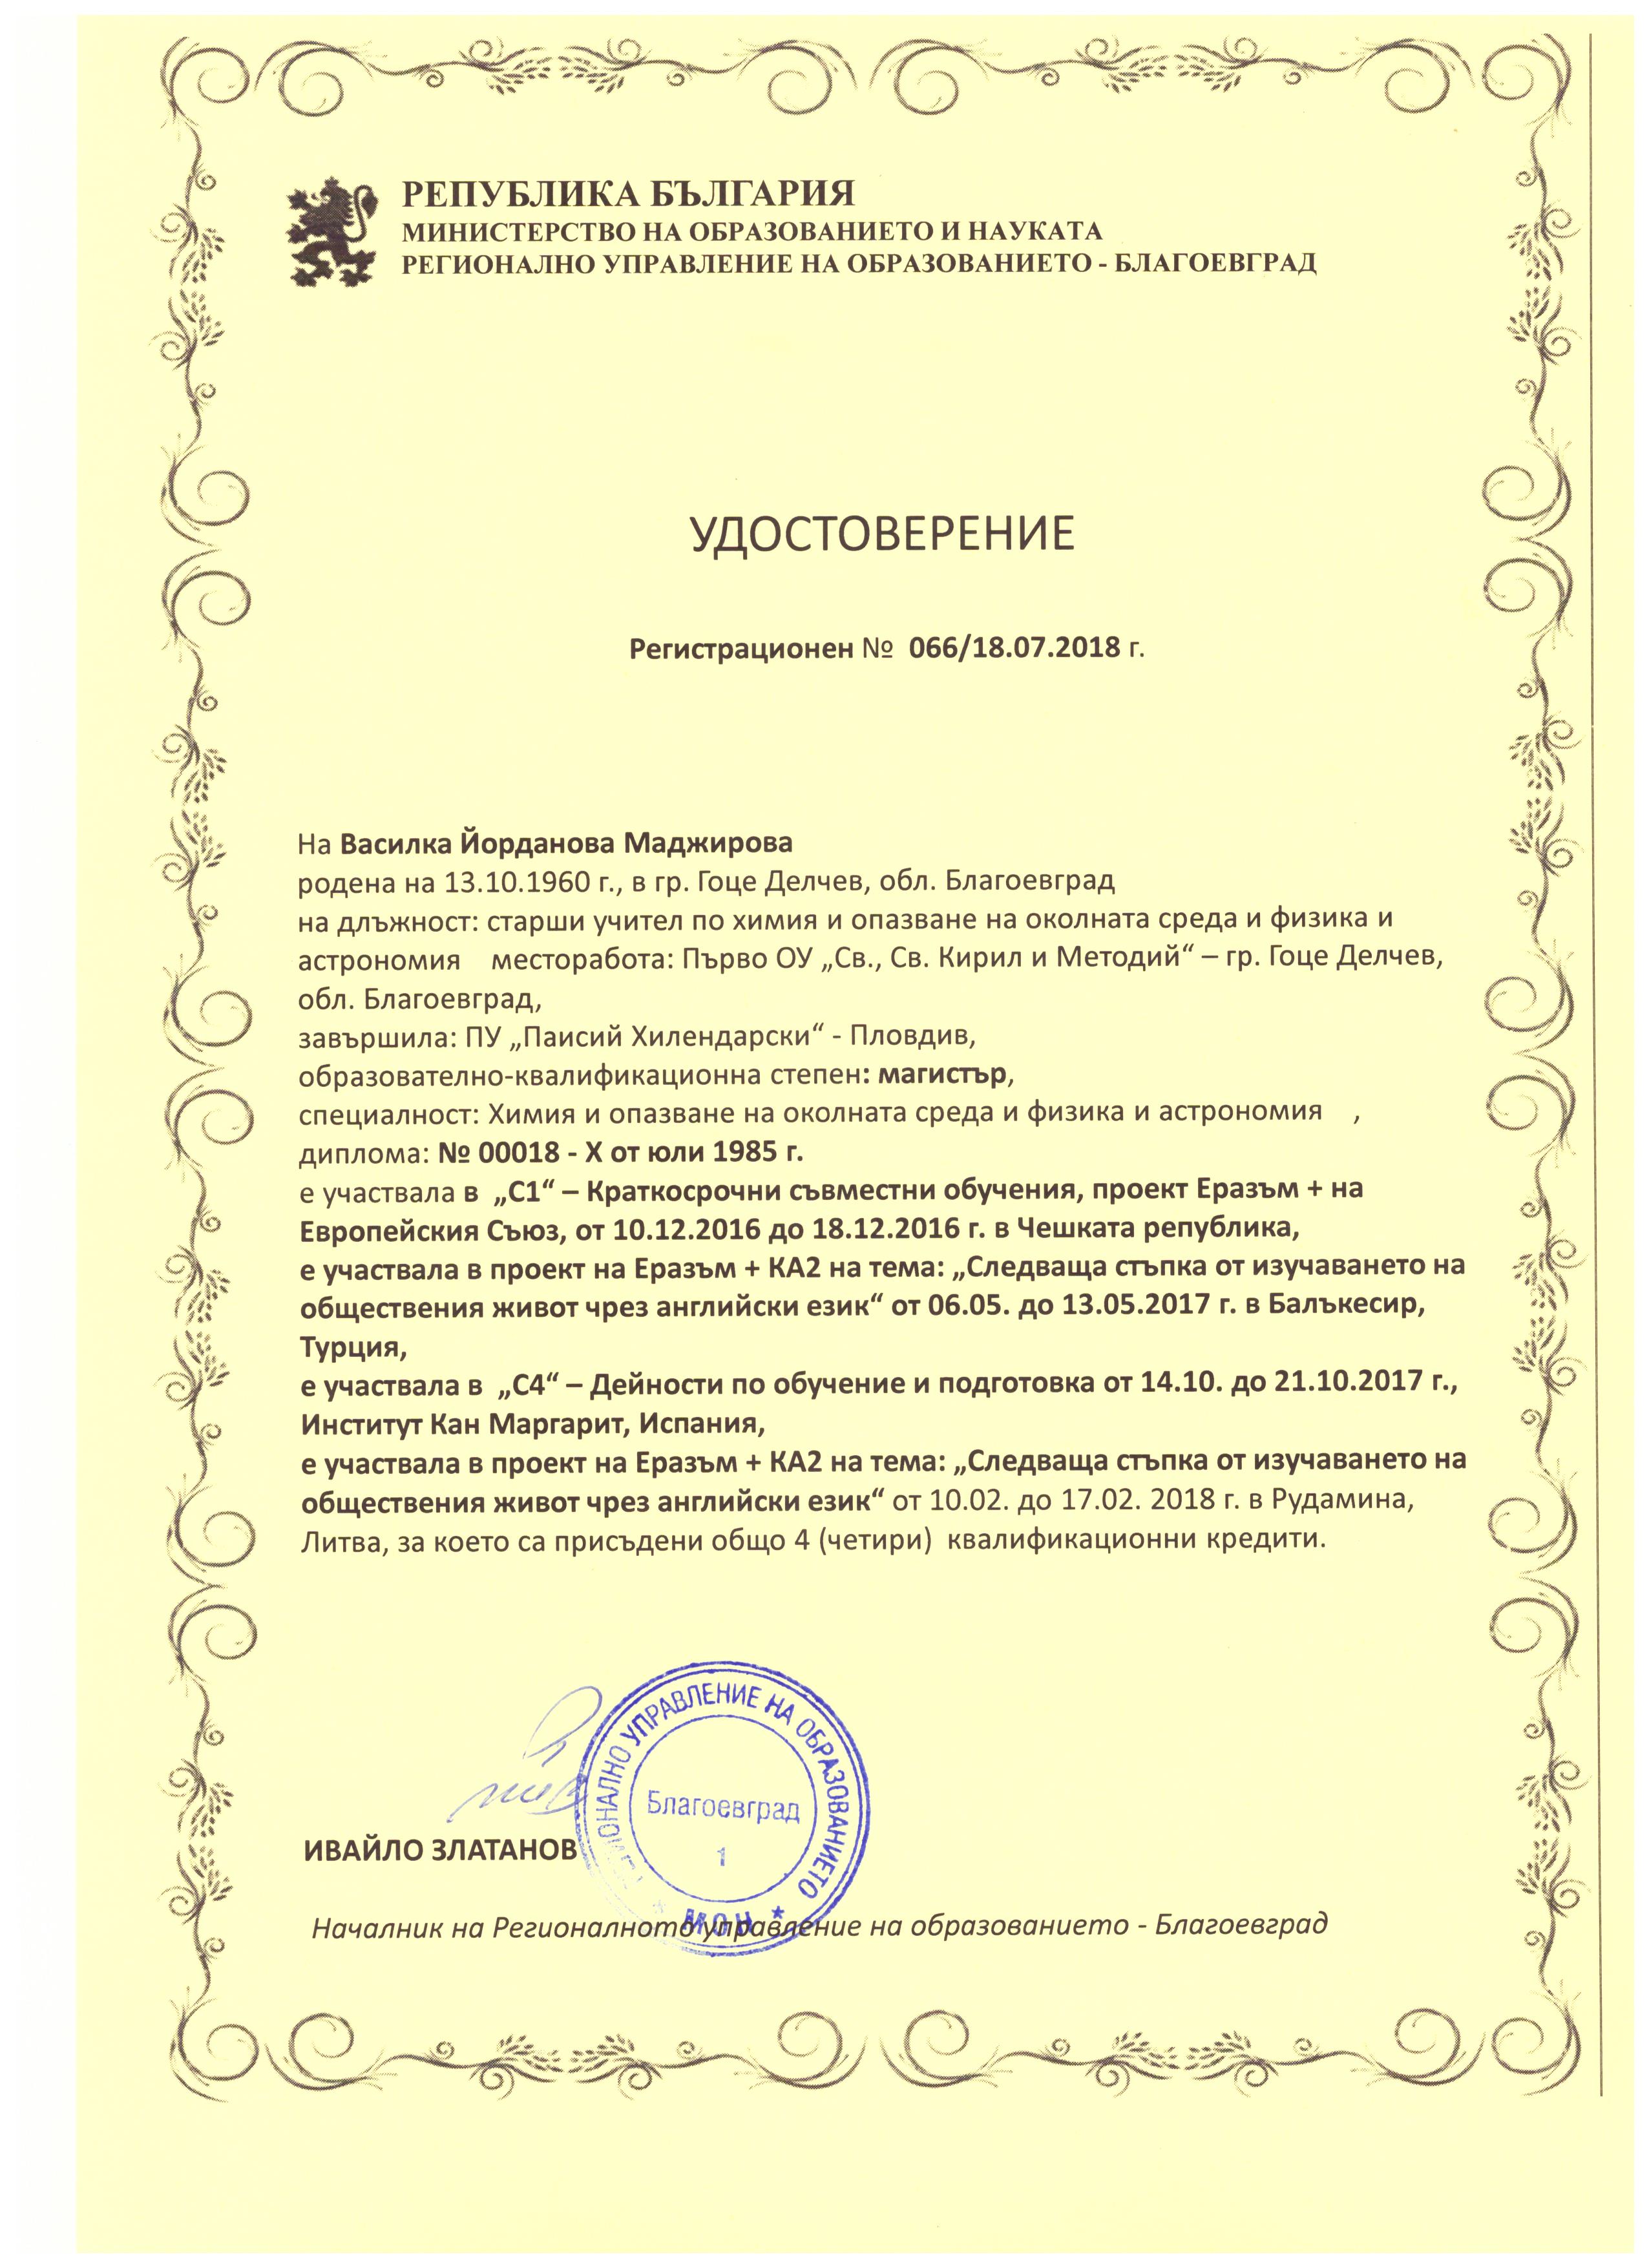 Vasilka Madzhirova - 4 qualification credits from Regional Educational Directorate